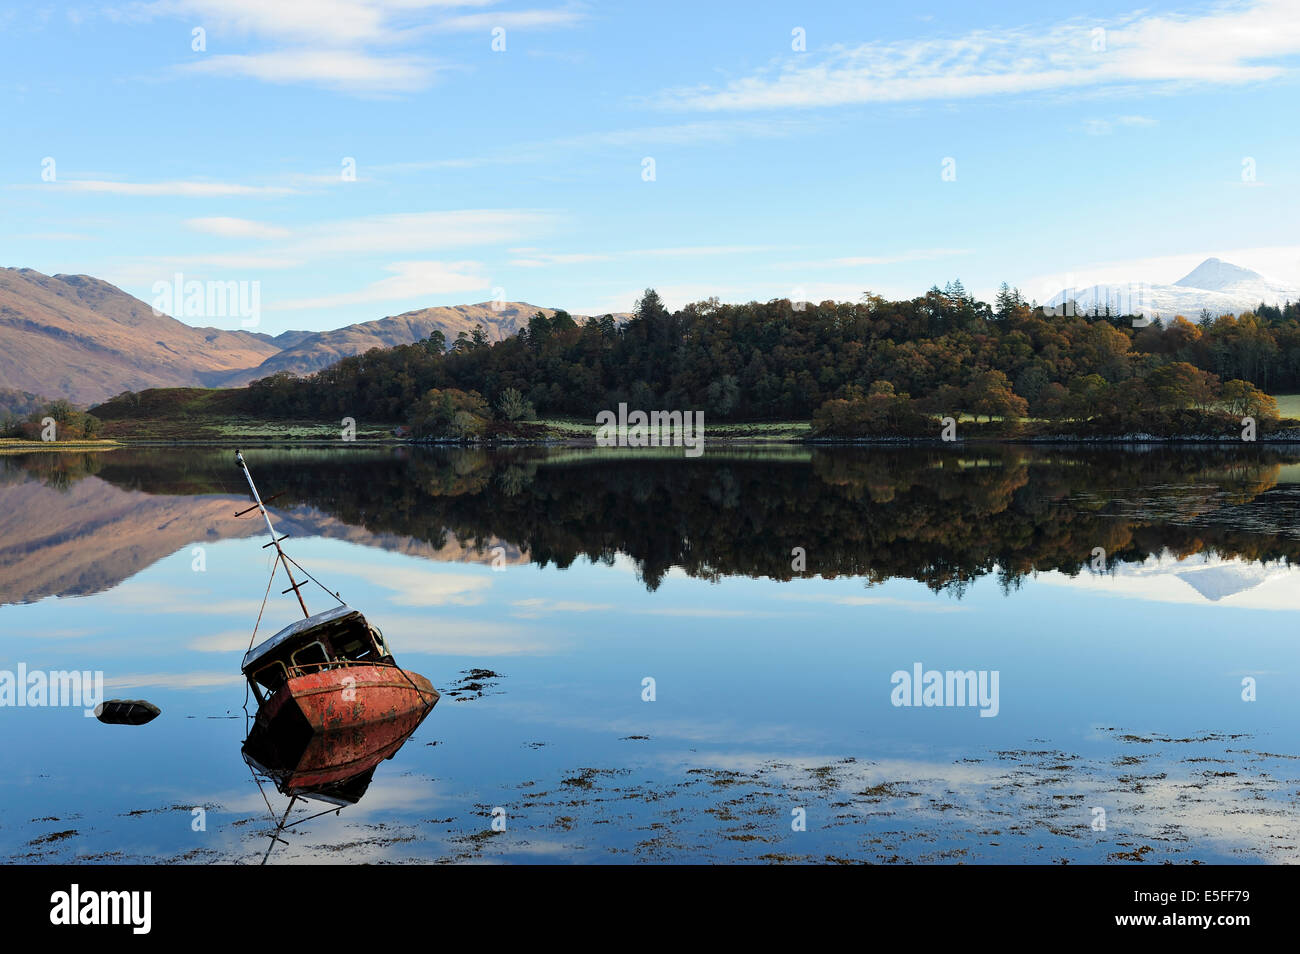 La moitié submergé bateau de pêche et de réflexions sur le Loch Etive hiver, Argyll and Bute, Ecosse Banque D'Images